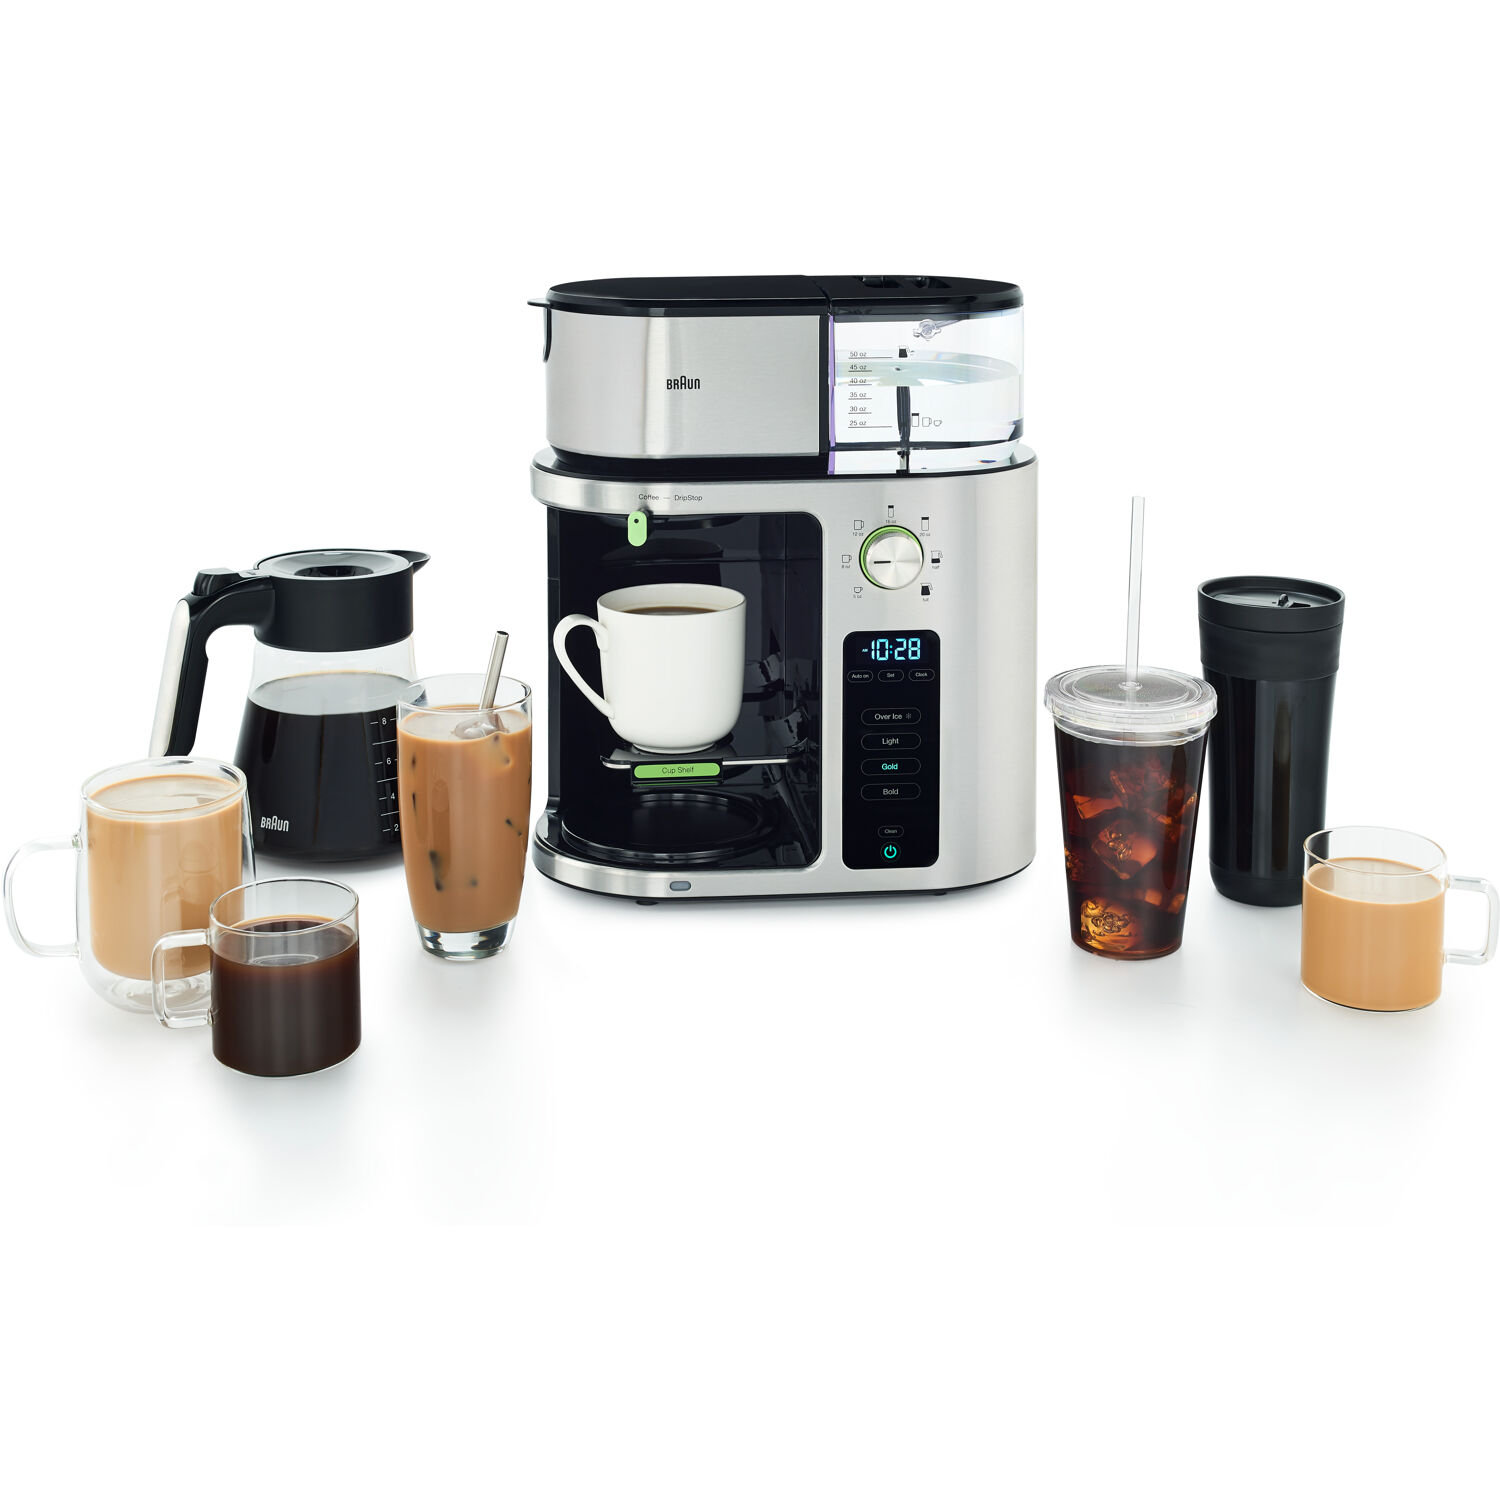 87 Electric Coffee Percolators ideas  percolator coffee, percolators,  coffee